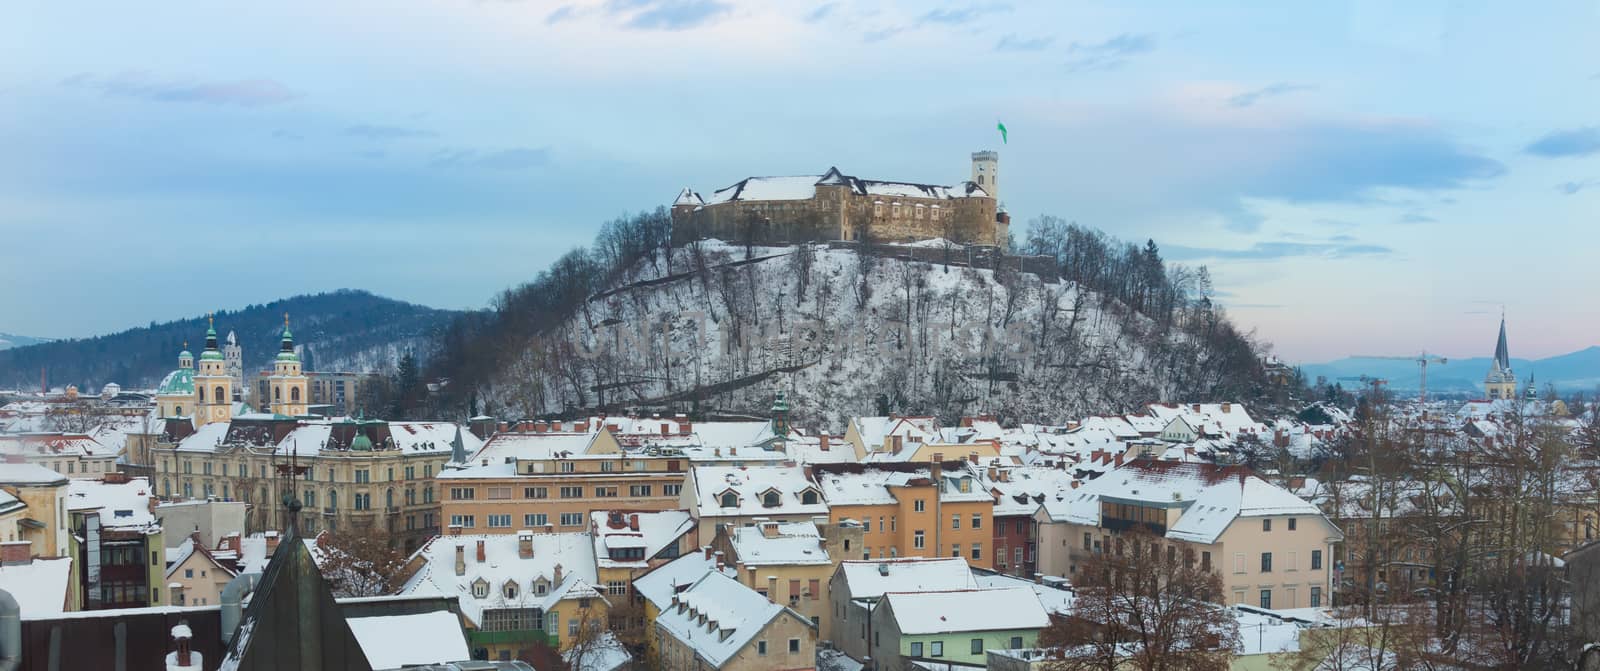 Panorama of Ljubljana in winter. Slovenia, Europe. by kasto